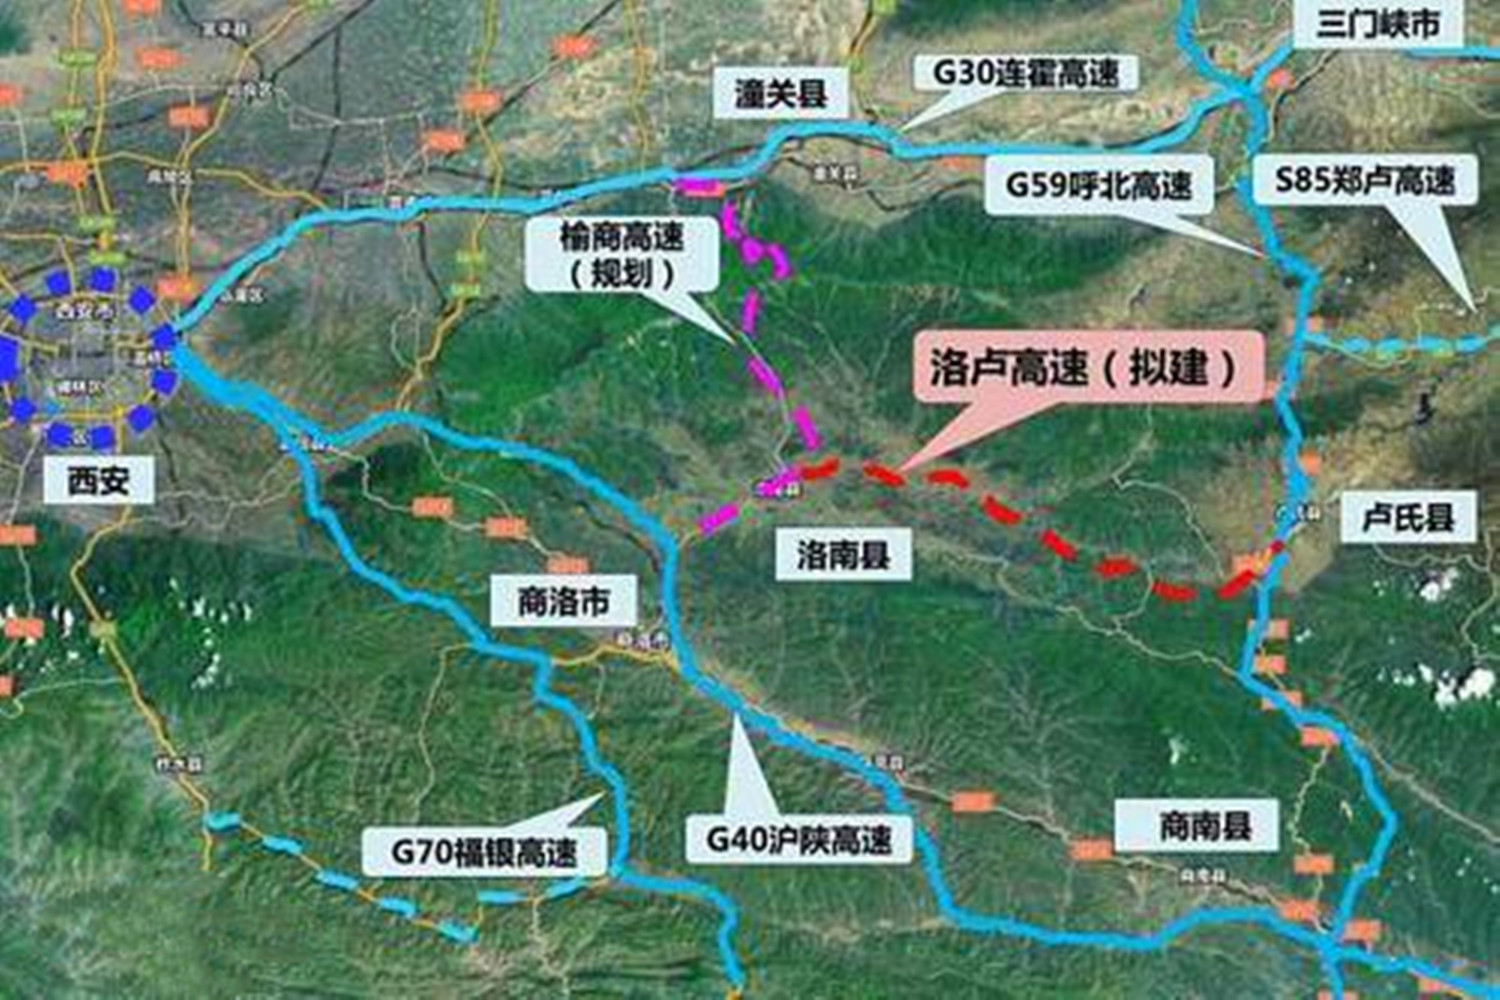 河南省西部将再添一条出省通道,全长4497公里,建设工期四年